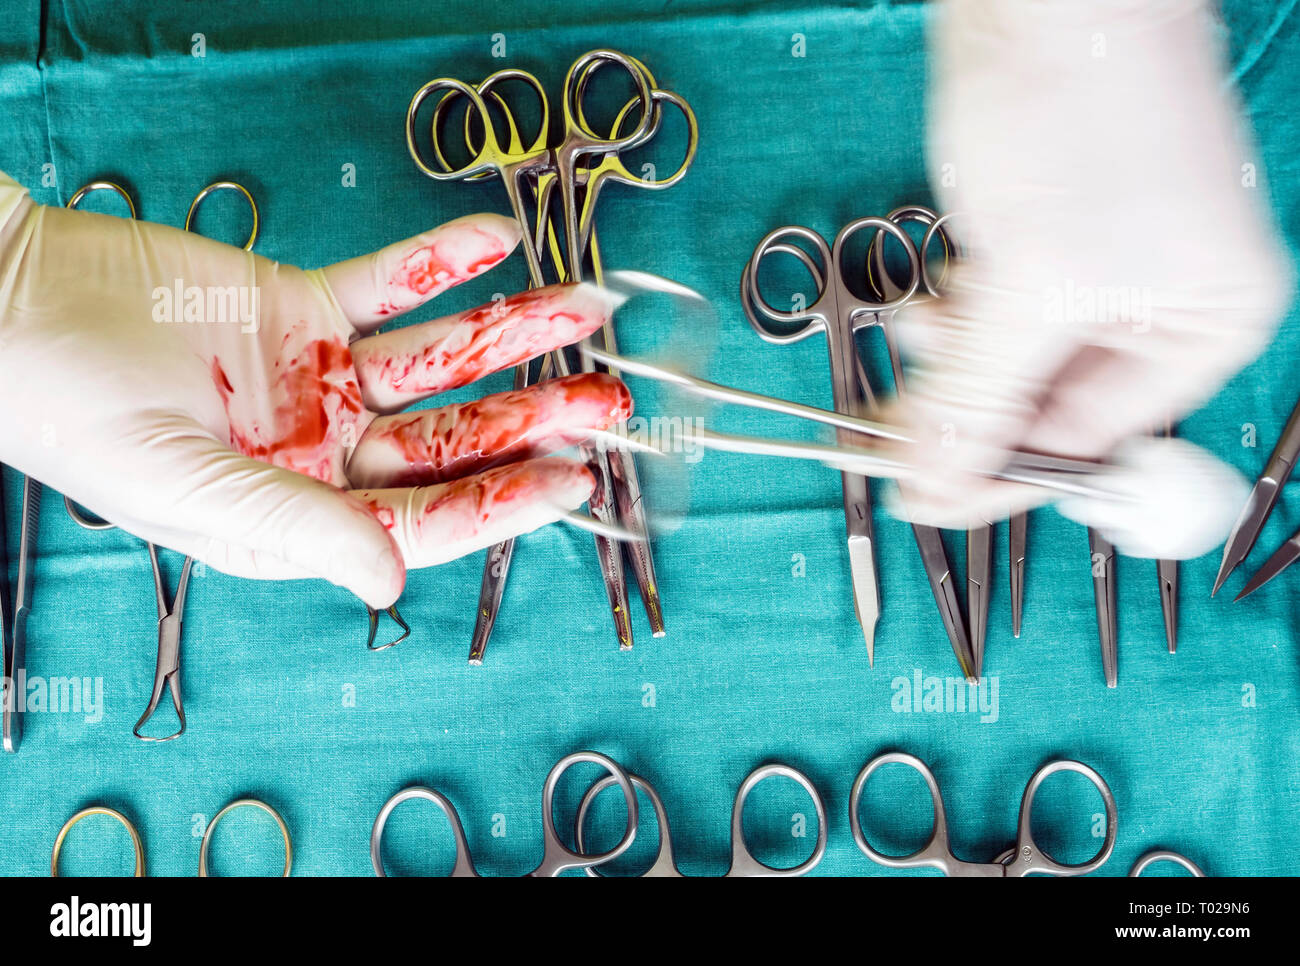 Chirurg im Operationssaal arbeiten, die Hände mit Handschuhen holding Schere Nähte, konzeptionelle Bild, composicon horizontal Stockfoto